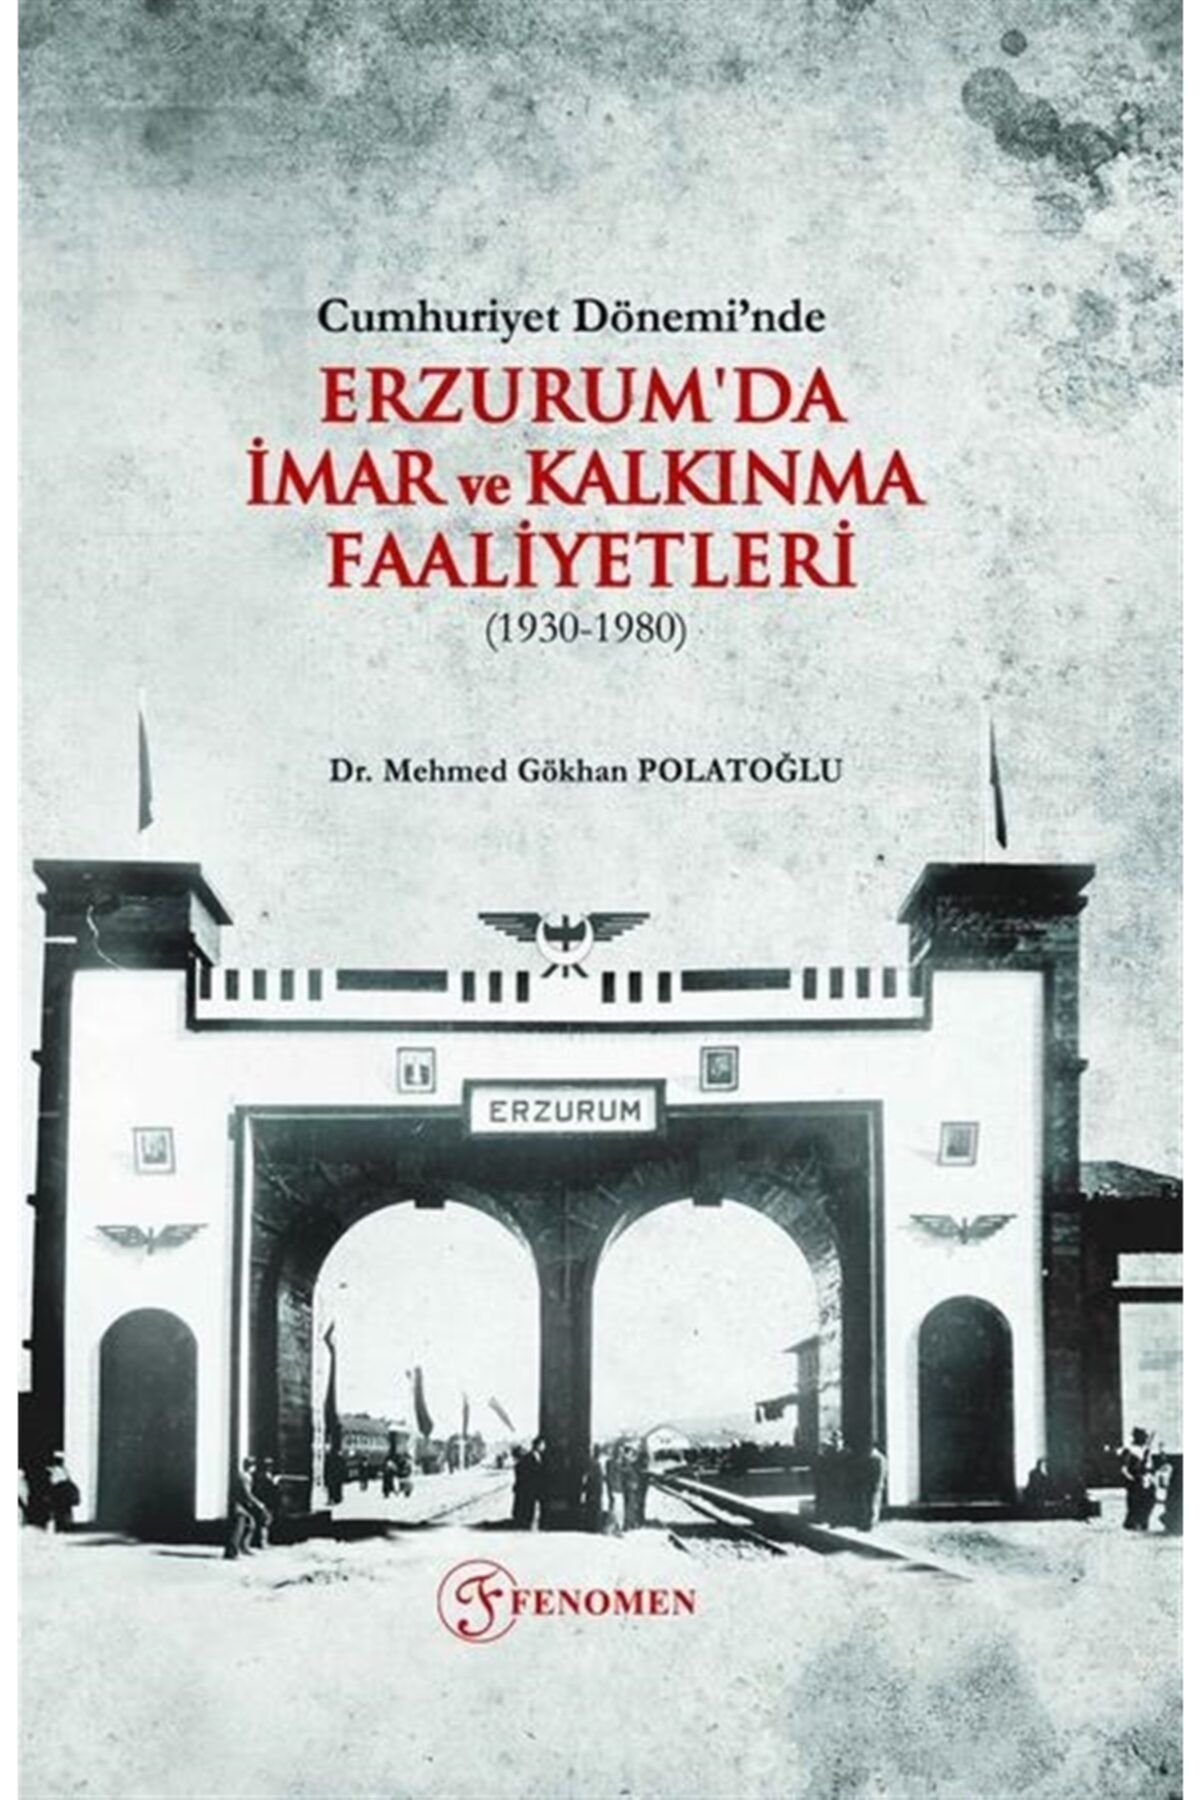 Fenomen Yayıncılık Cumhuriyet Dönemi’nde Erzurum'da Imar Ve Kalkınma Faaliyetleri (1930-1980)